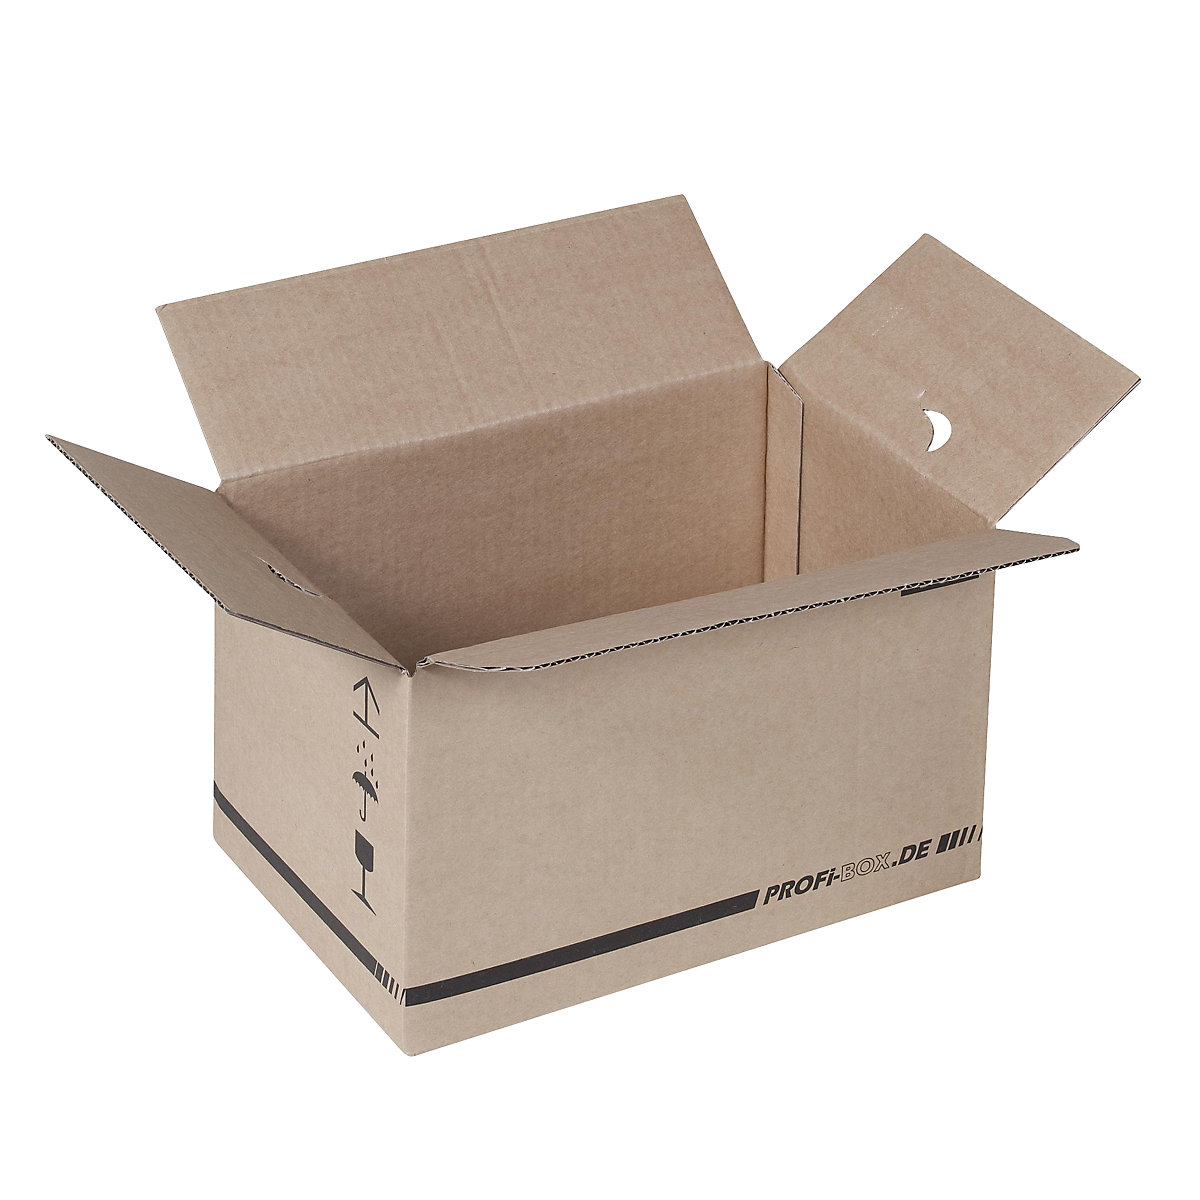 Profesionalne kutije, od 1-valnog kartona, FEFCO 0701, unutarnje dimenzije 284 x 184 x 167 mm, pak. 50 kom.